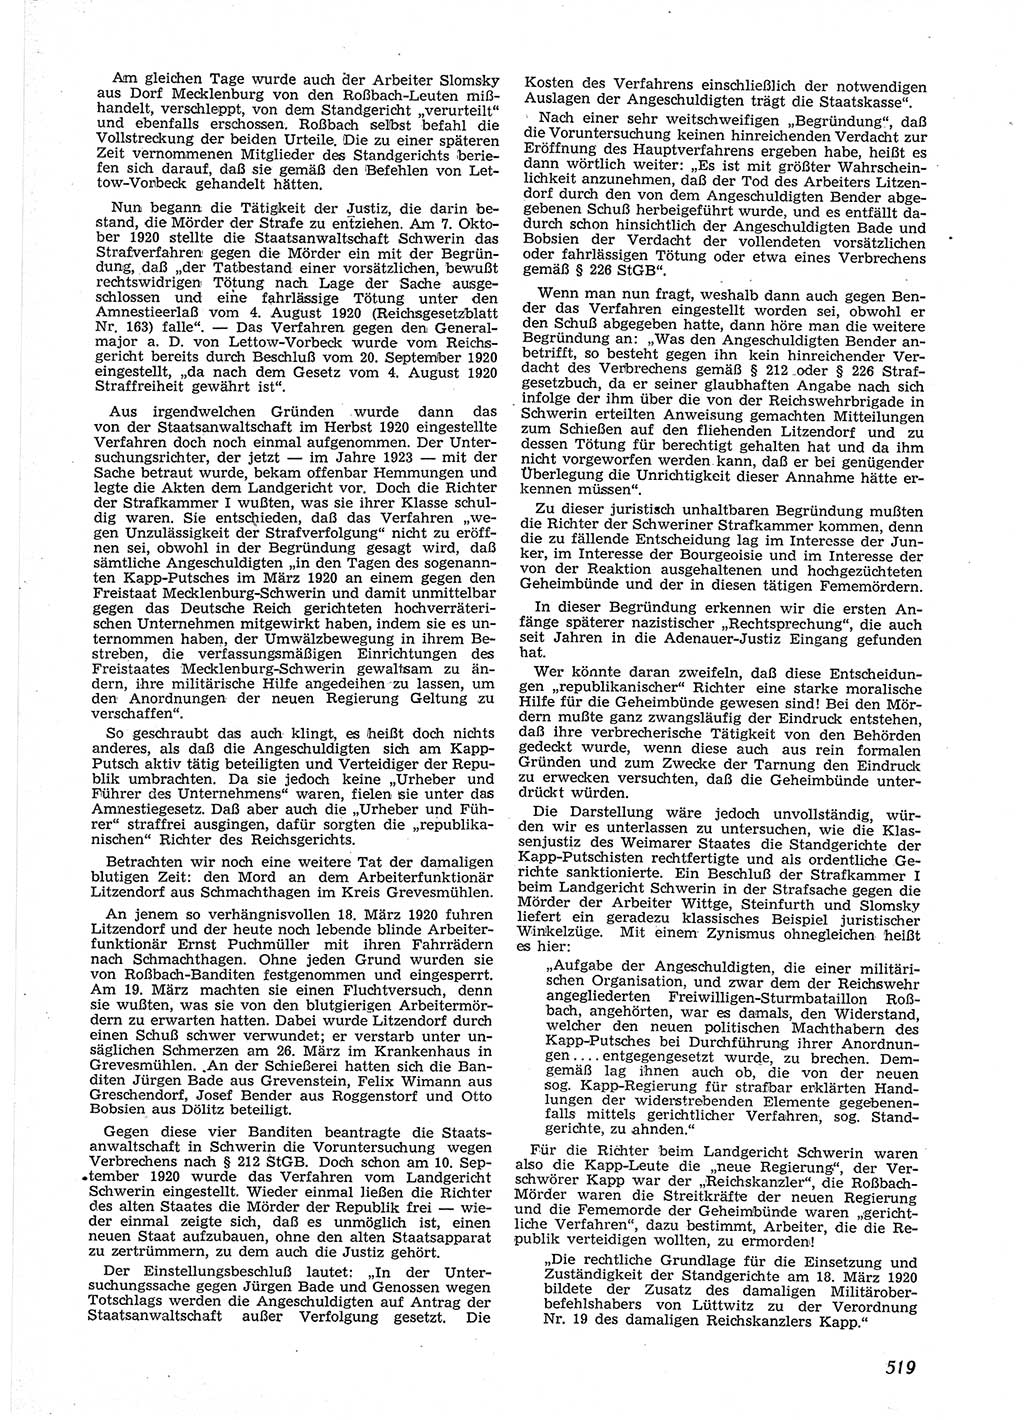 Neue Justiz (NJ), Zeitschrift für Recht und Rechtswissenschaft [Deutsche Demokratische Republik (DDR)], 9. Jahrgang 1955, Seite 519 (NJ DDR 1955, S. 519)